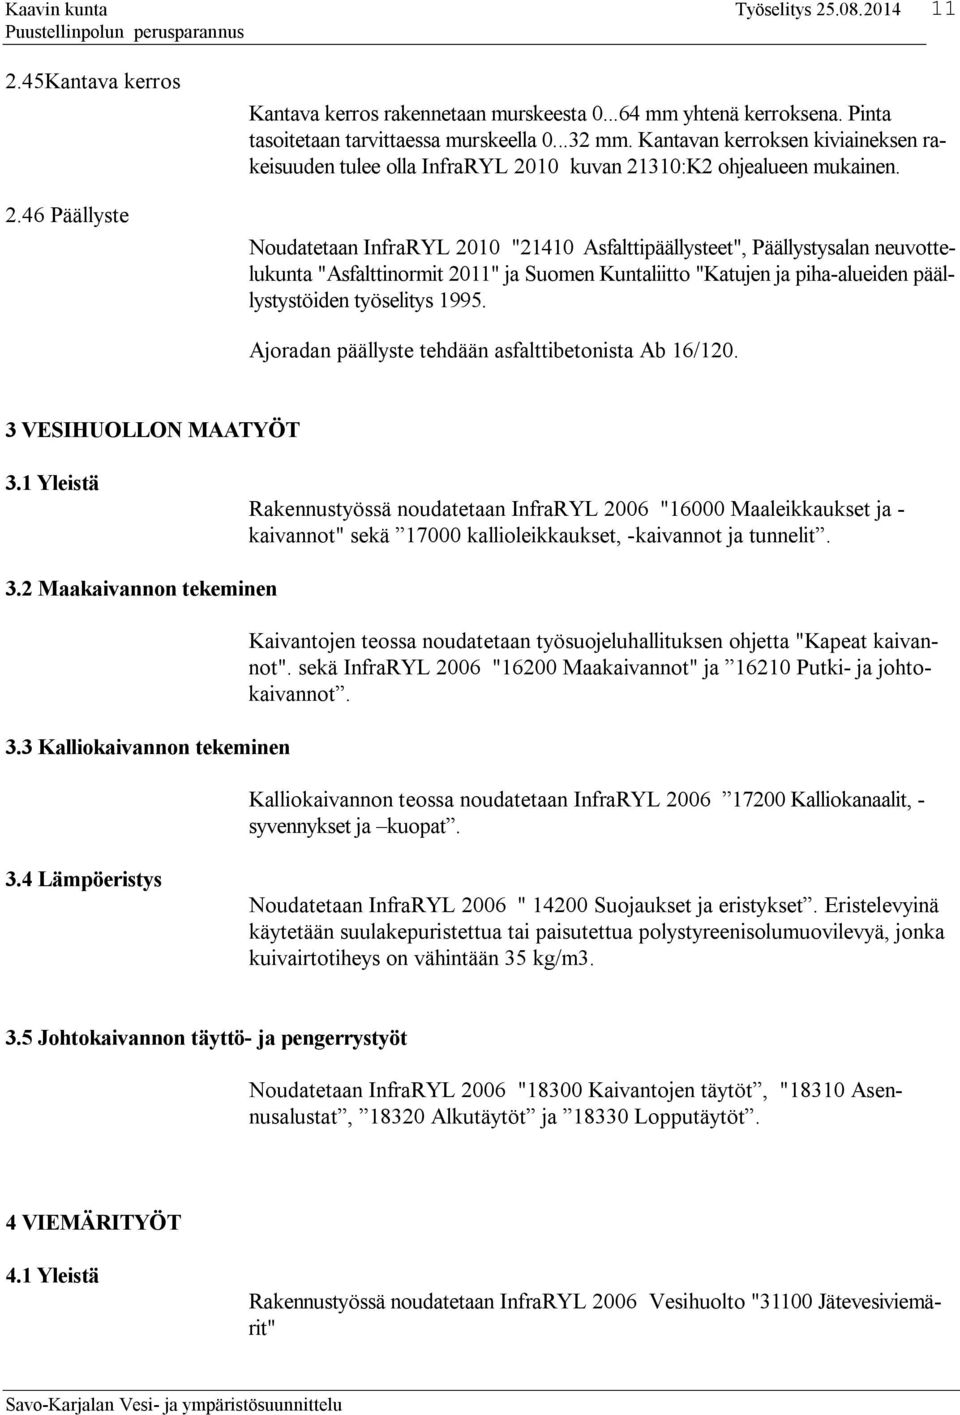 Noudatetaan InfraRYL 2010 "21410 Asfalttipäällysteet", Päällystysalan neuvottelukunta "Asfalttinormit 2011" ja Suomen Kuntaliitto "Katujen ja piha-alueiden päällystystöiden työselitys 1995.